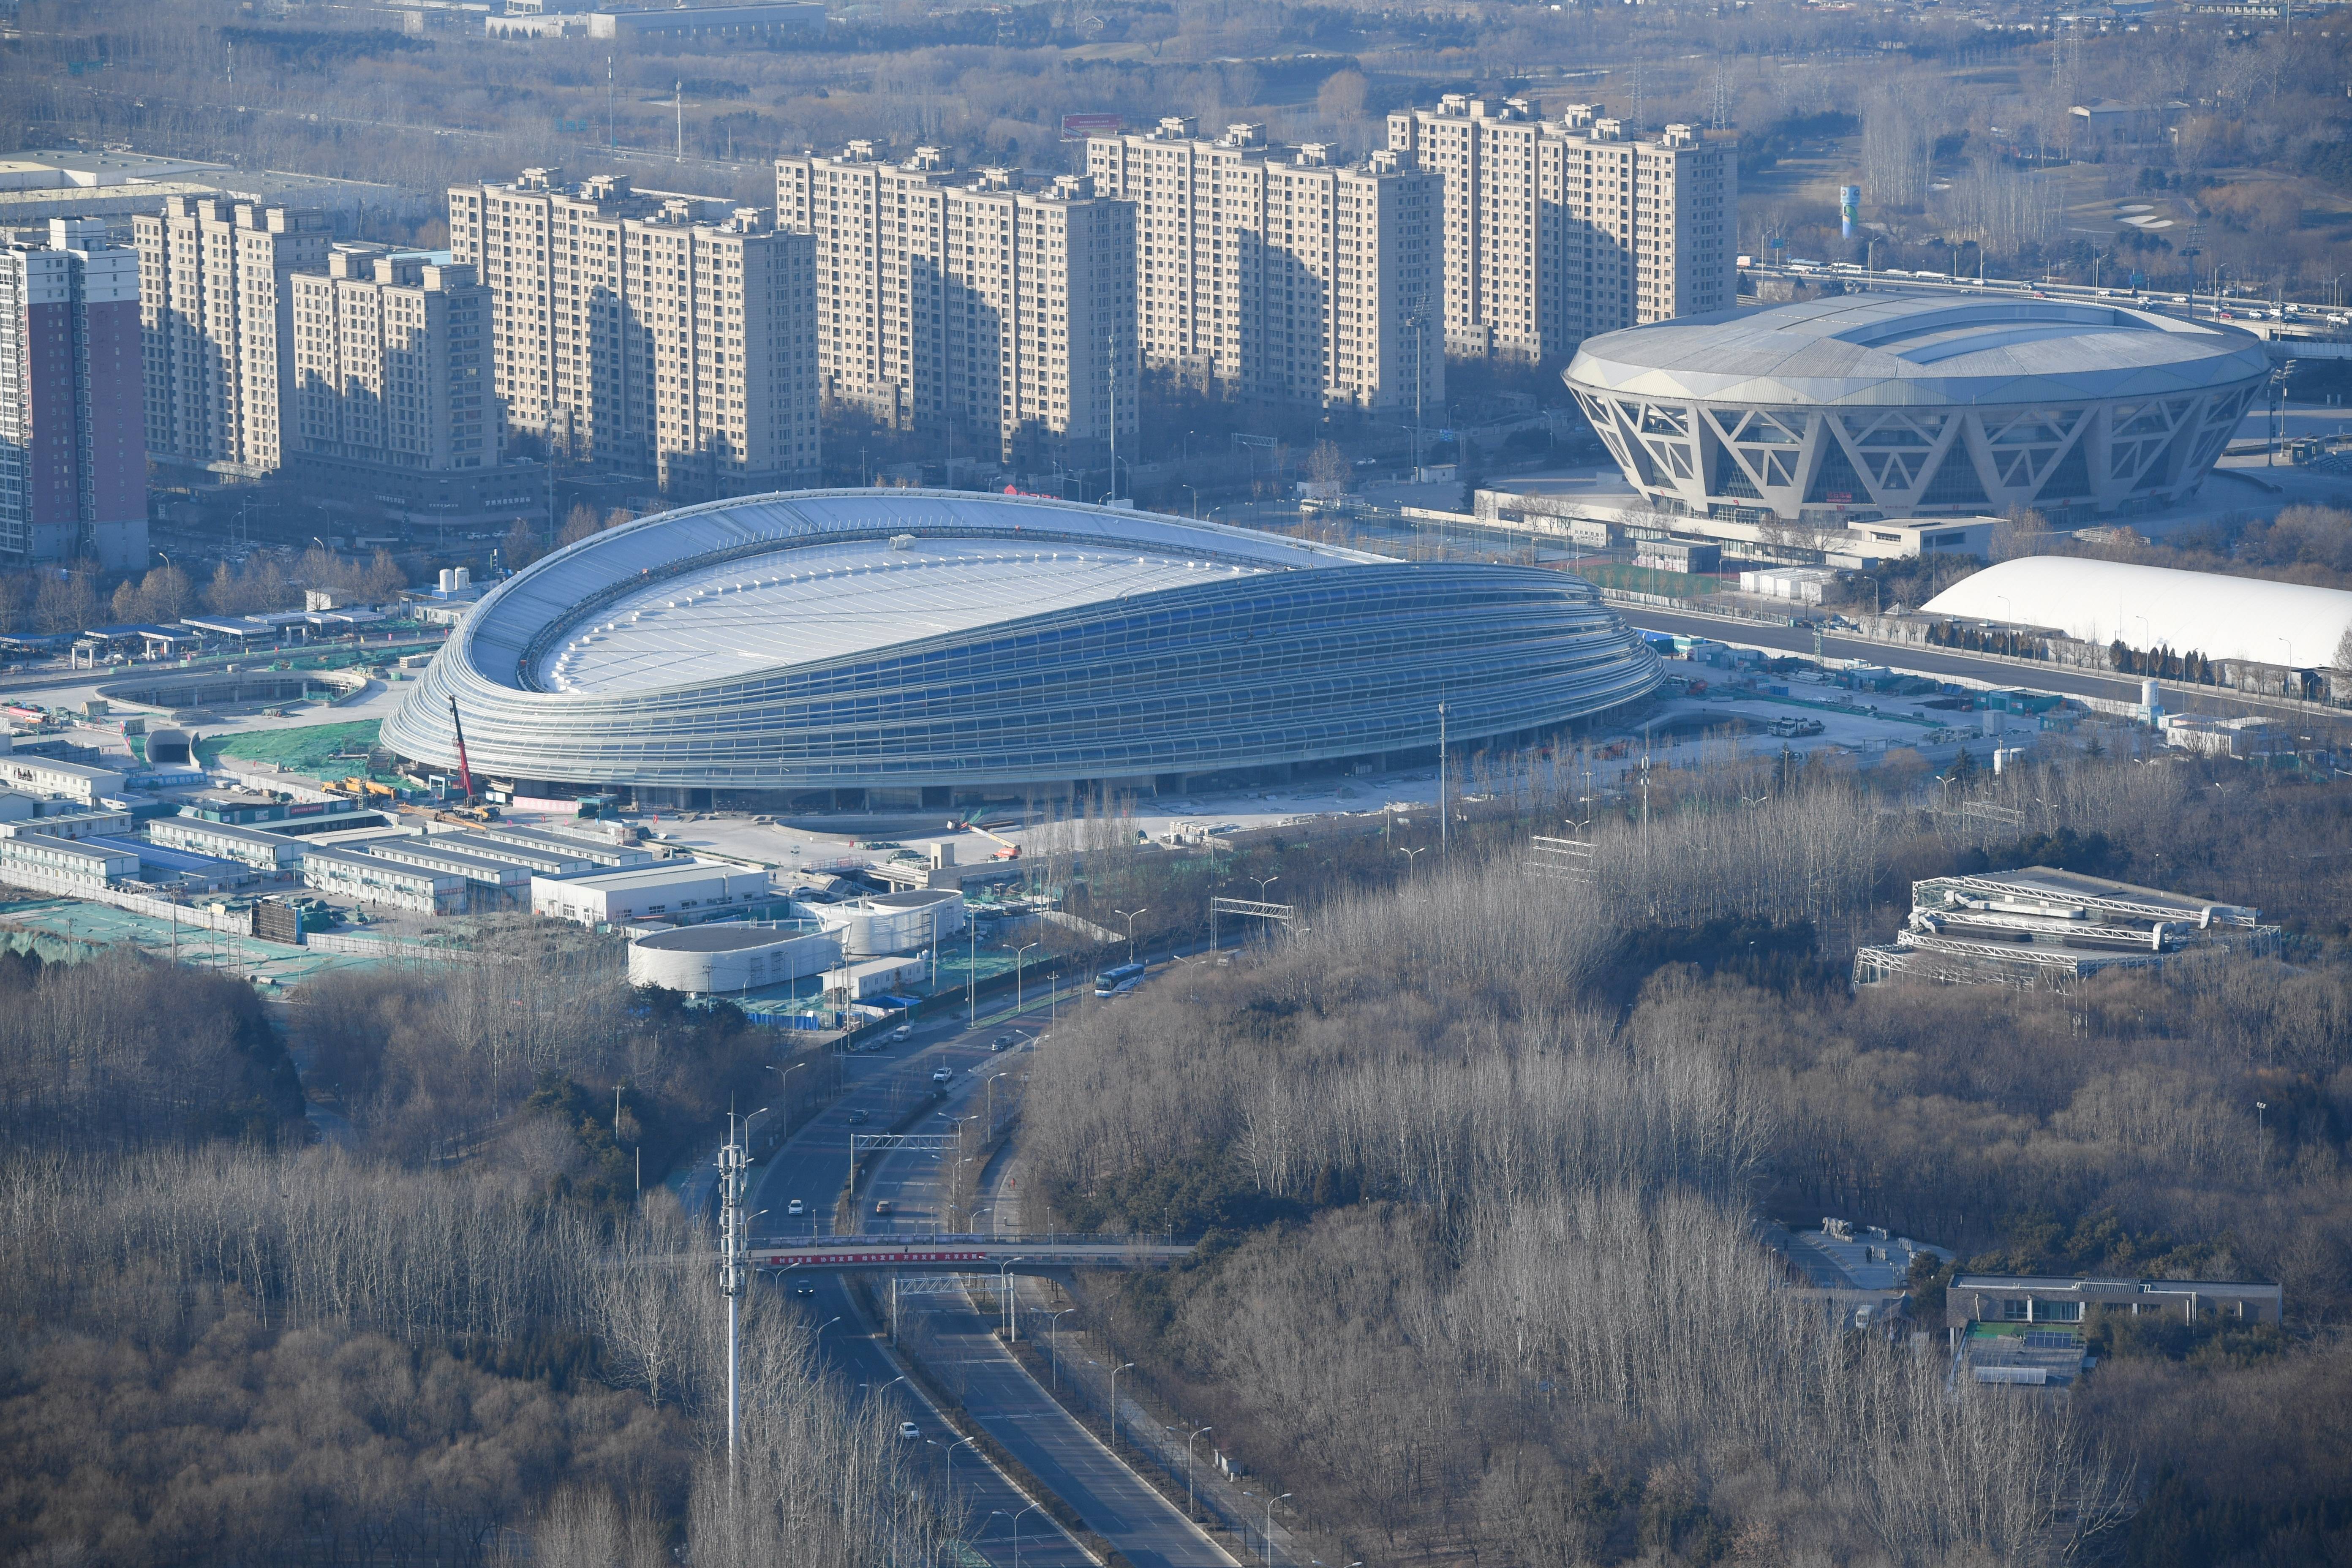 这是2019年12月31日在北京拍摄的实现封顶封围的国家速滑馆冰丝带